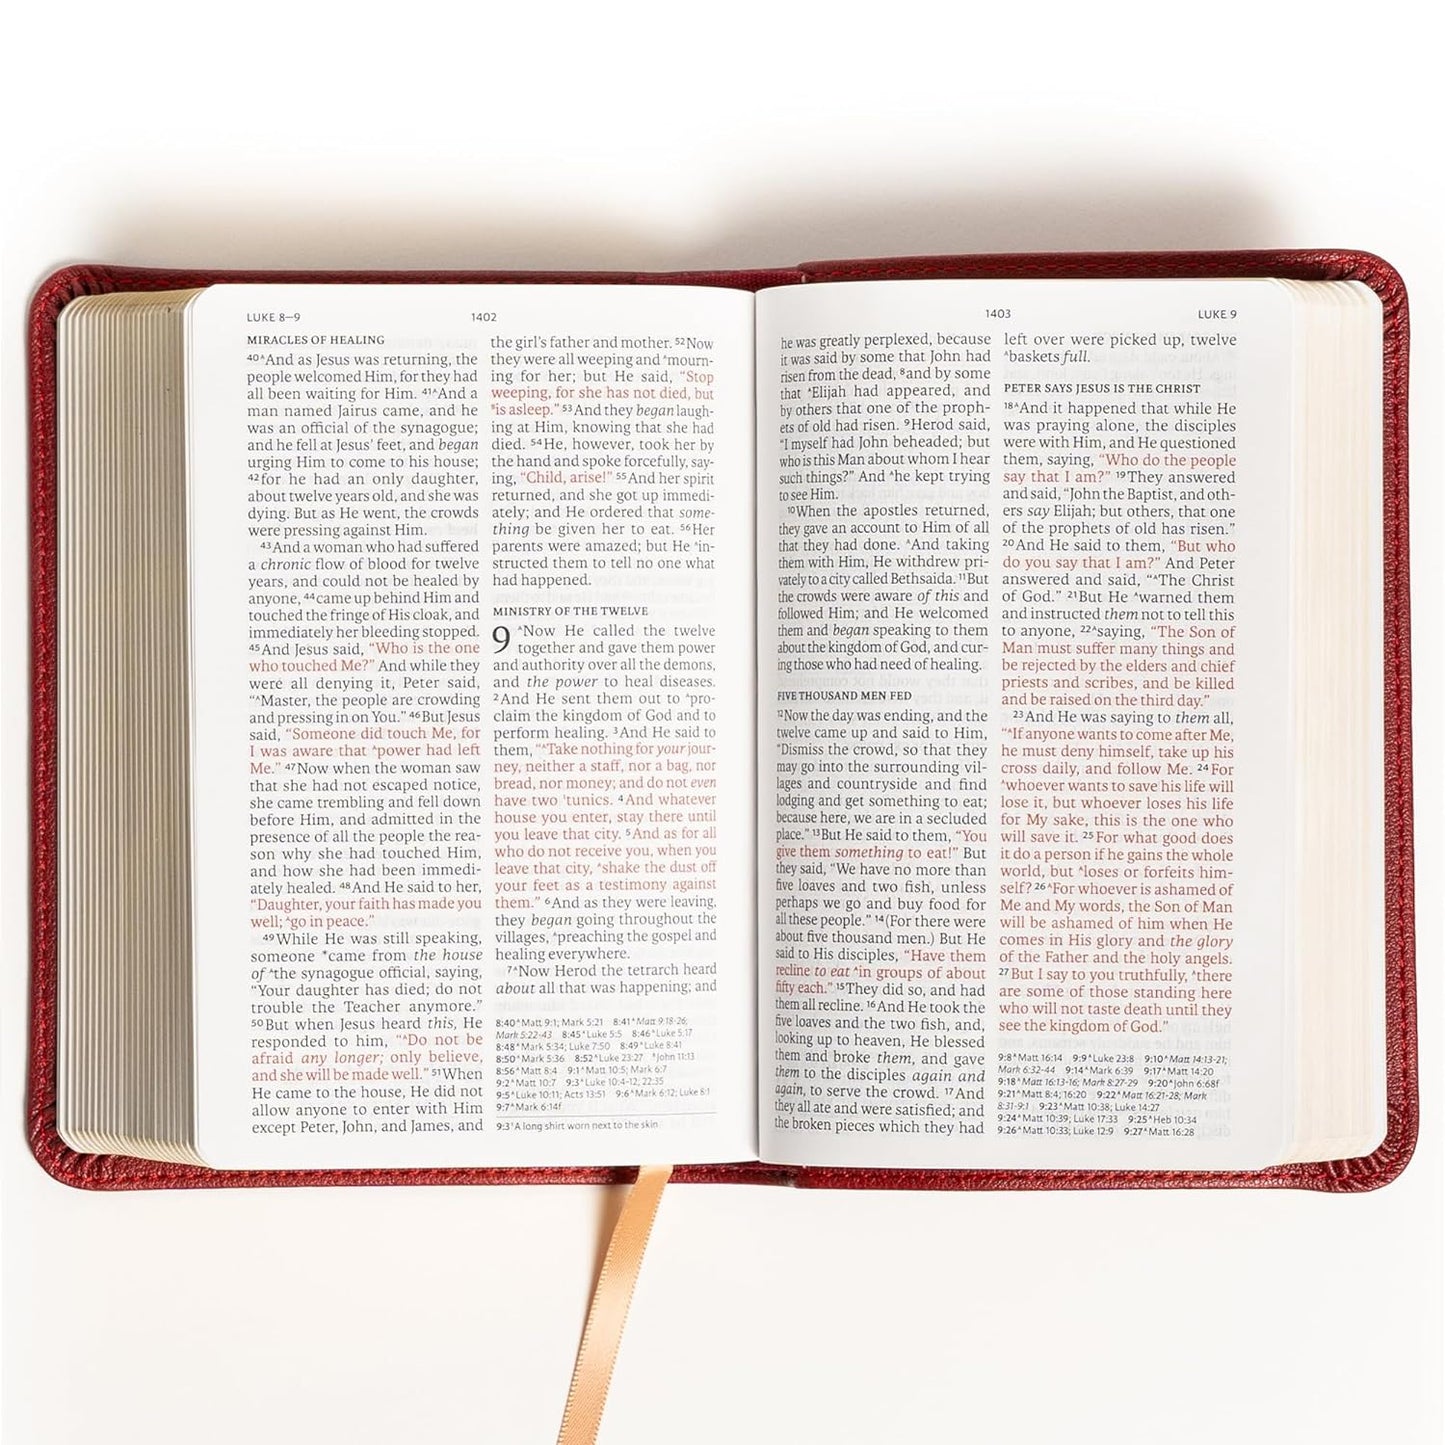 NASB Compact Reference Bible, Burgundy